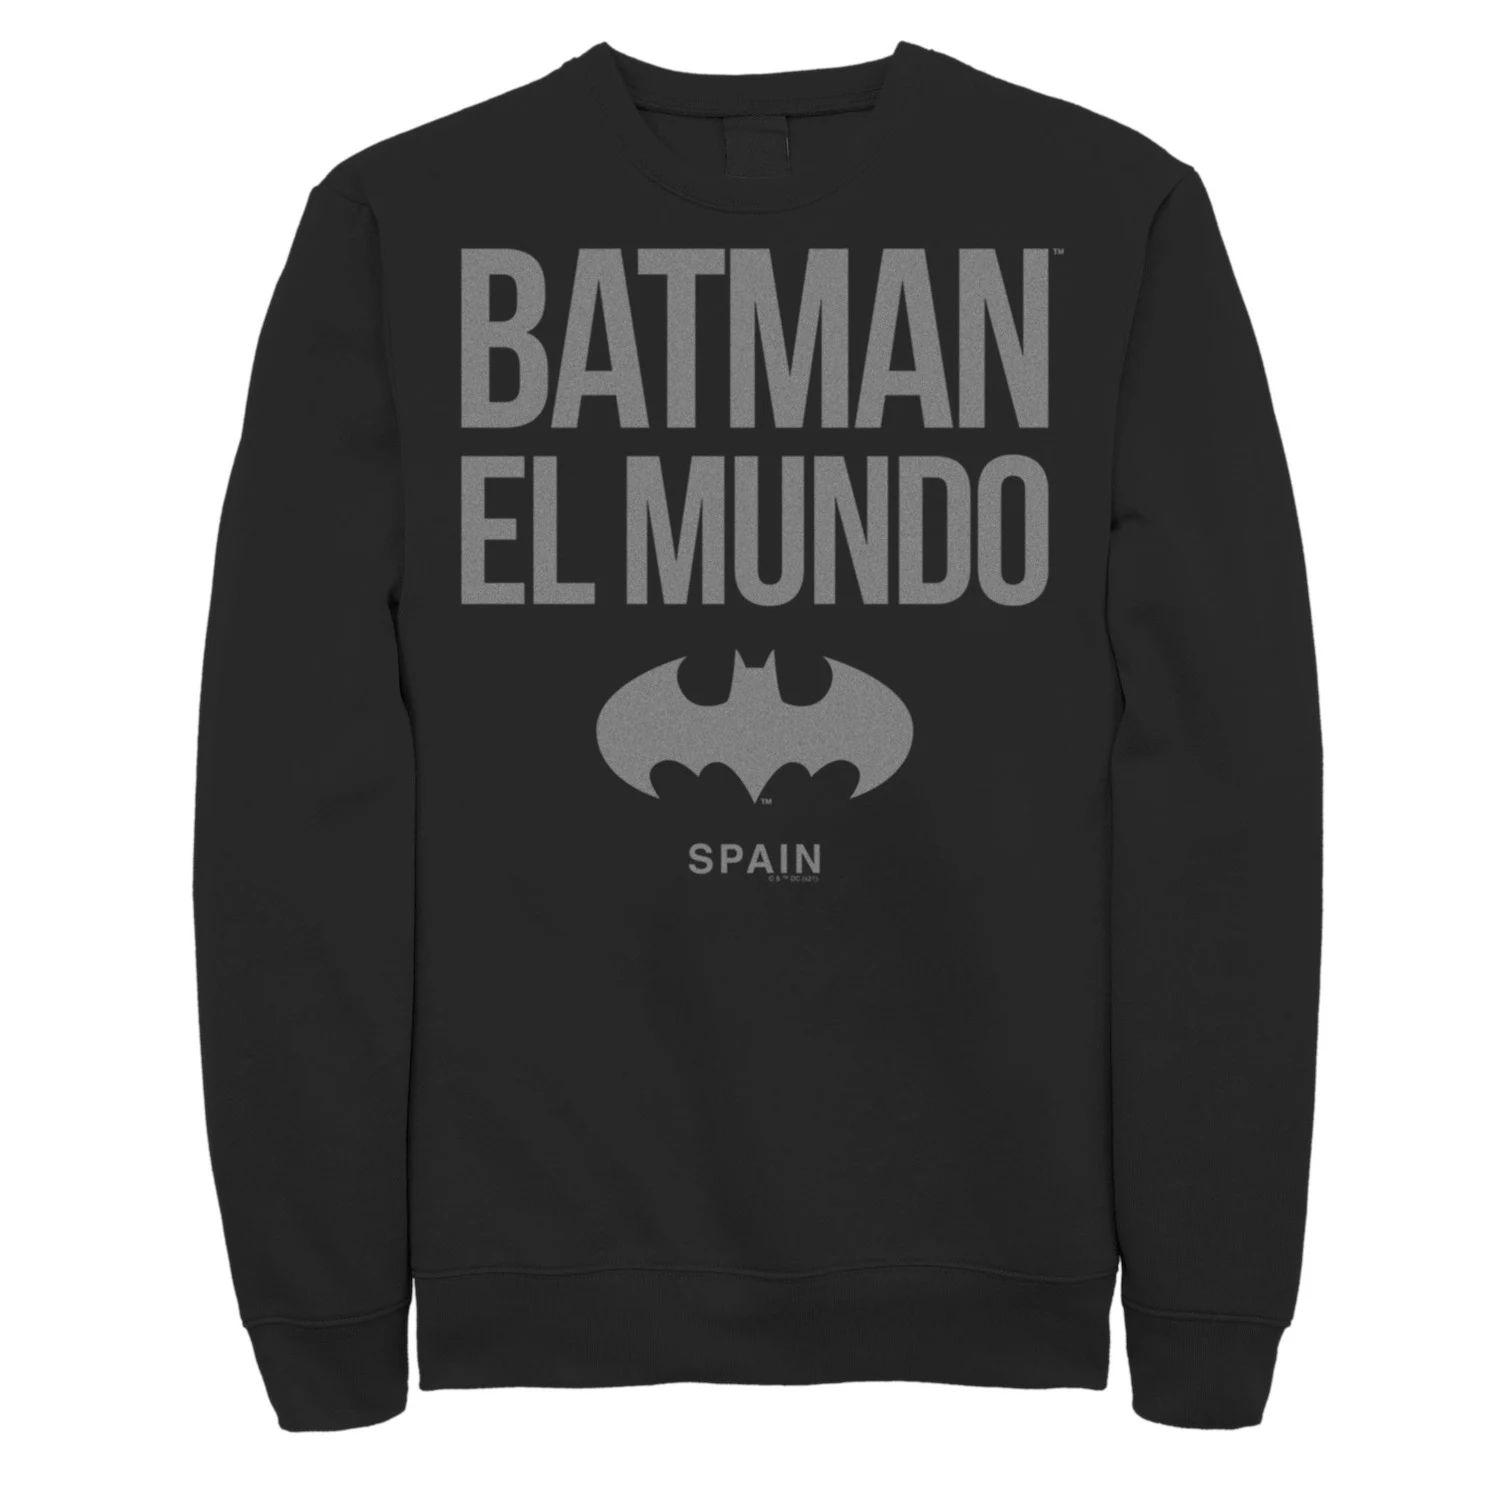 Мужской свитшот с логотипом Batman: El Mundo Spain Icon Licensed Character кружка dc comics batman